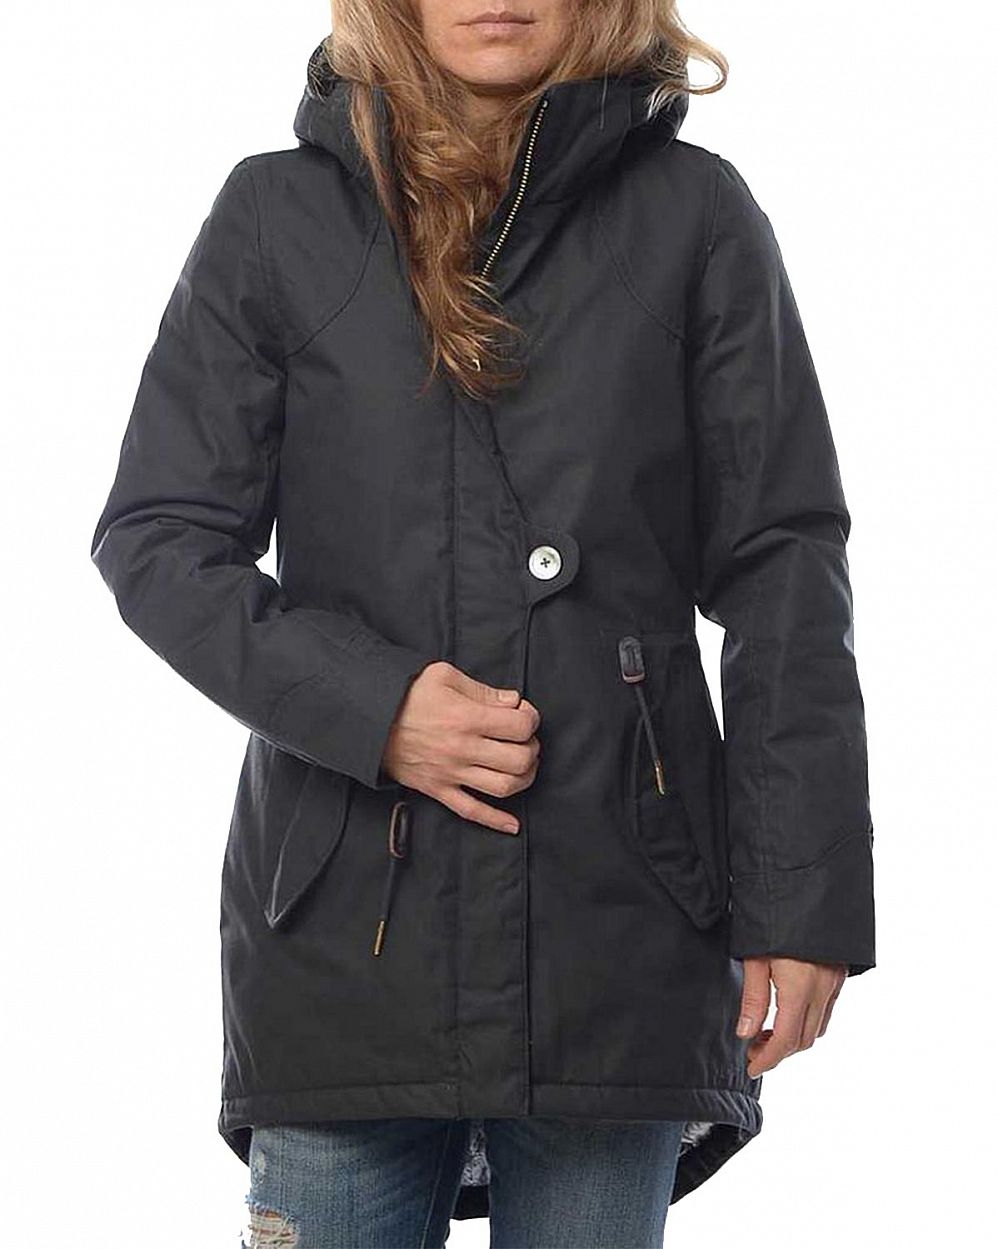 Куртка женская демисезонная водоотталкивающая Швеция Elvine Fia Dark Grey отзывы